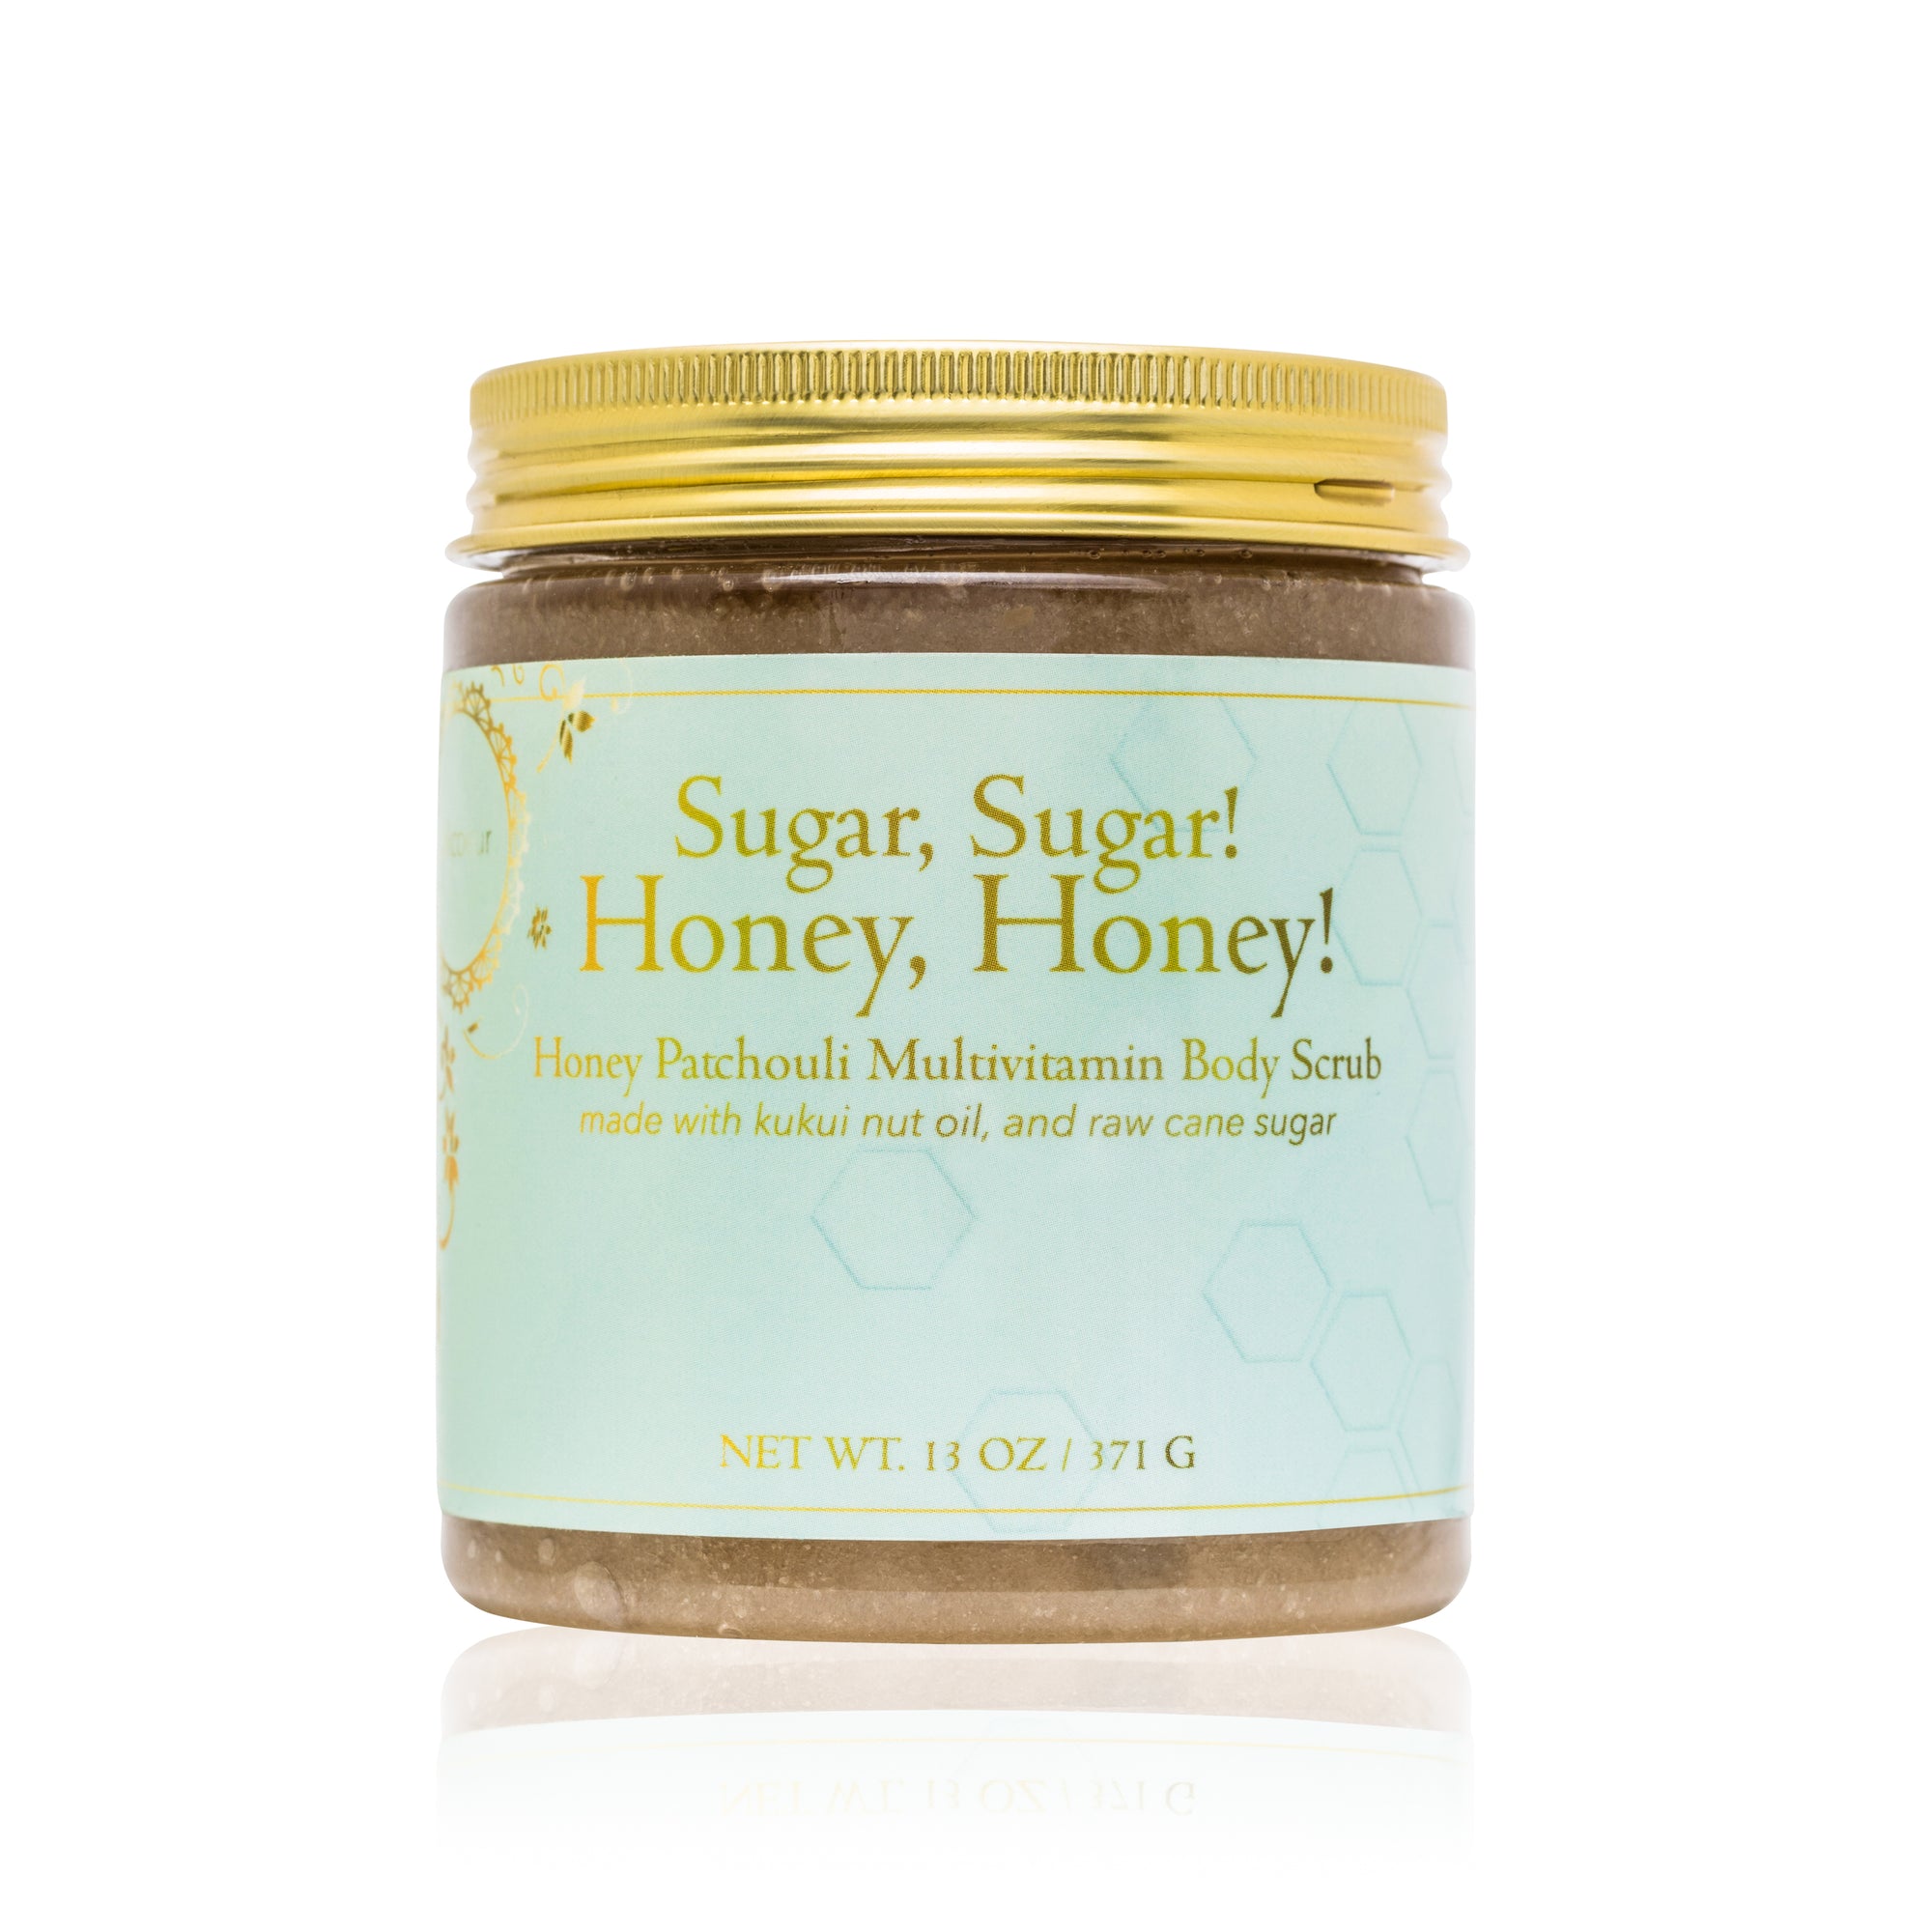 Sugar Sugar Honey Honey Multivitamin Body Scrub Jolicoeur